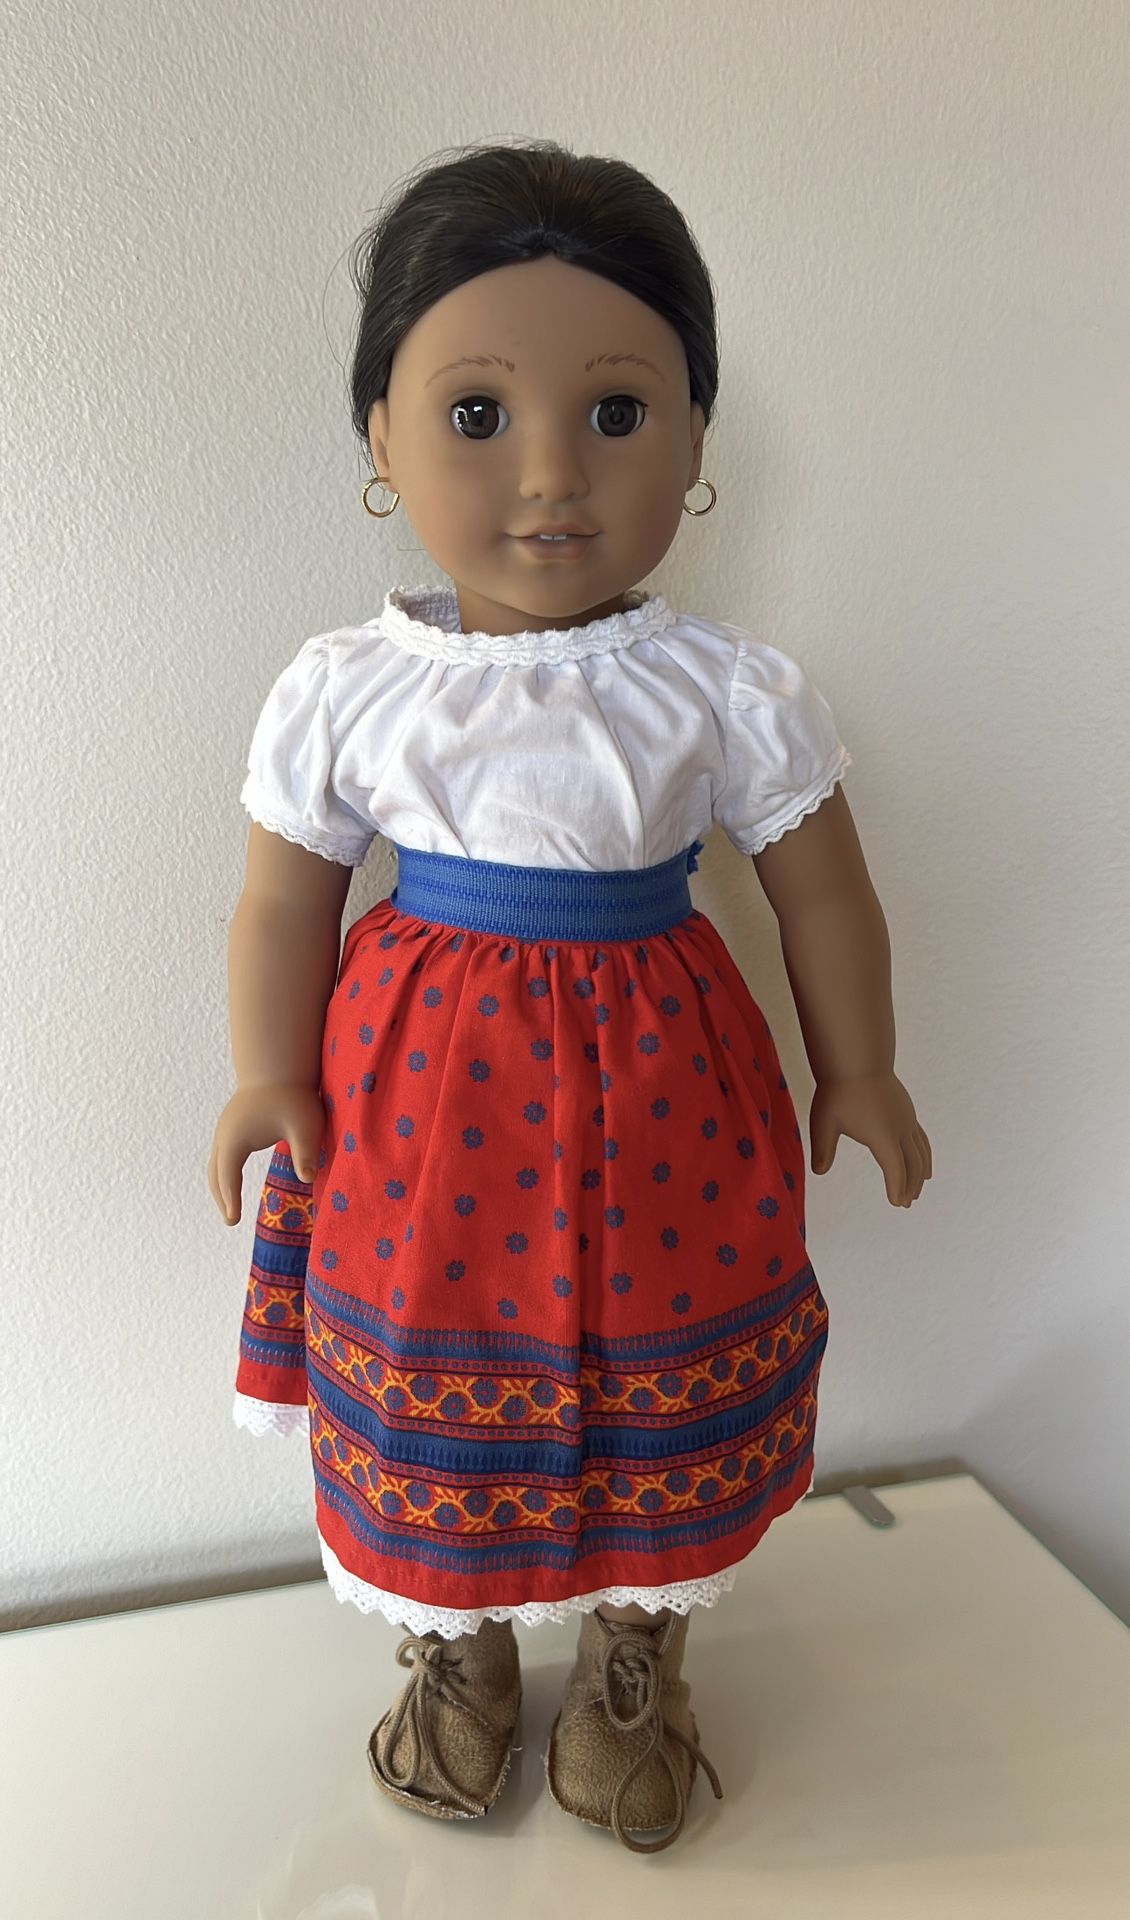 American girl doll Josefina